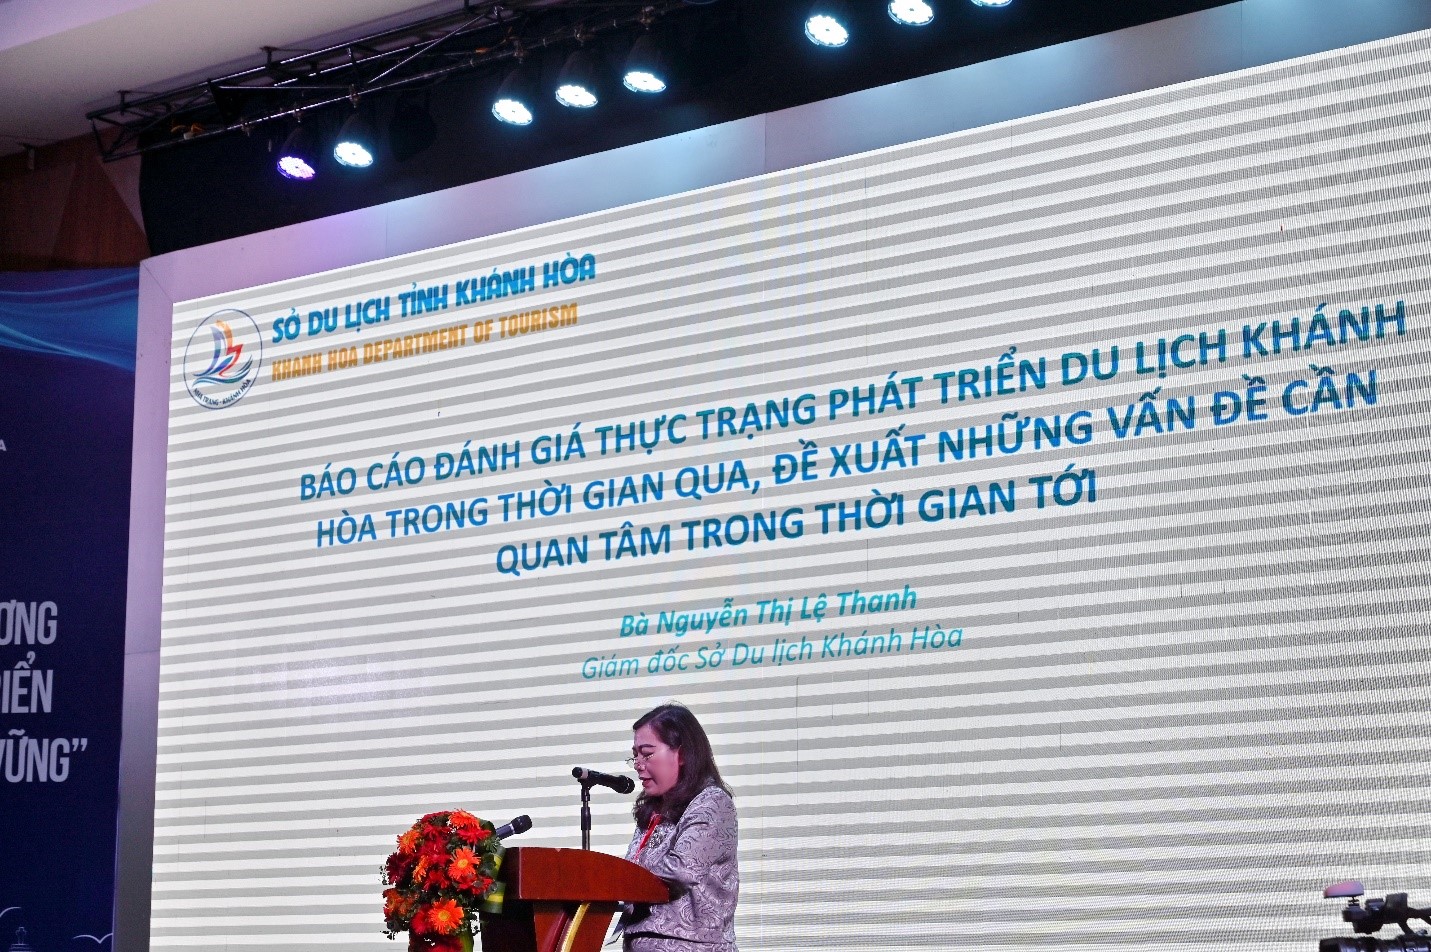 Bà Nguyễn Thị Lệ Thanh, Giám đốc Sở Du lịch Khánh Hòa phát biểu đánh giá thực trạng du lịch Khánh Hòa và những vấn đề cần quan tâm 
Ảnh Ngọc Vân